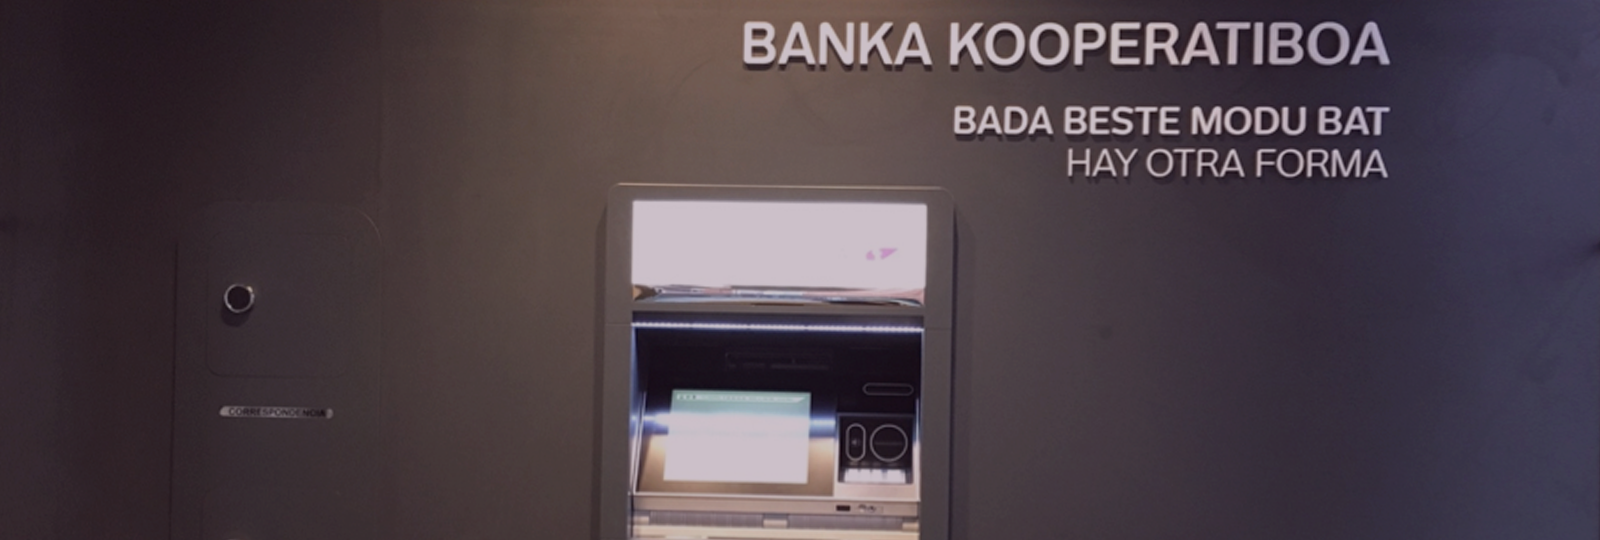 Cómo recuperar tu clave y acceso a la Banca Online